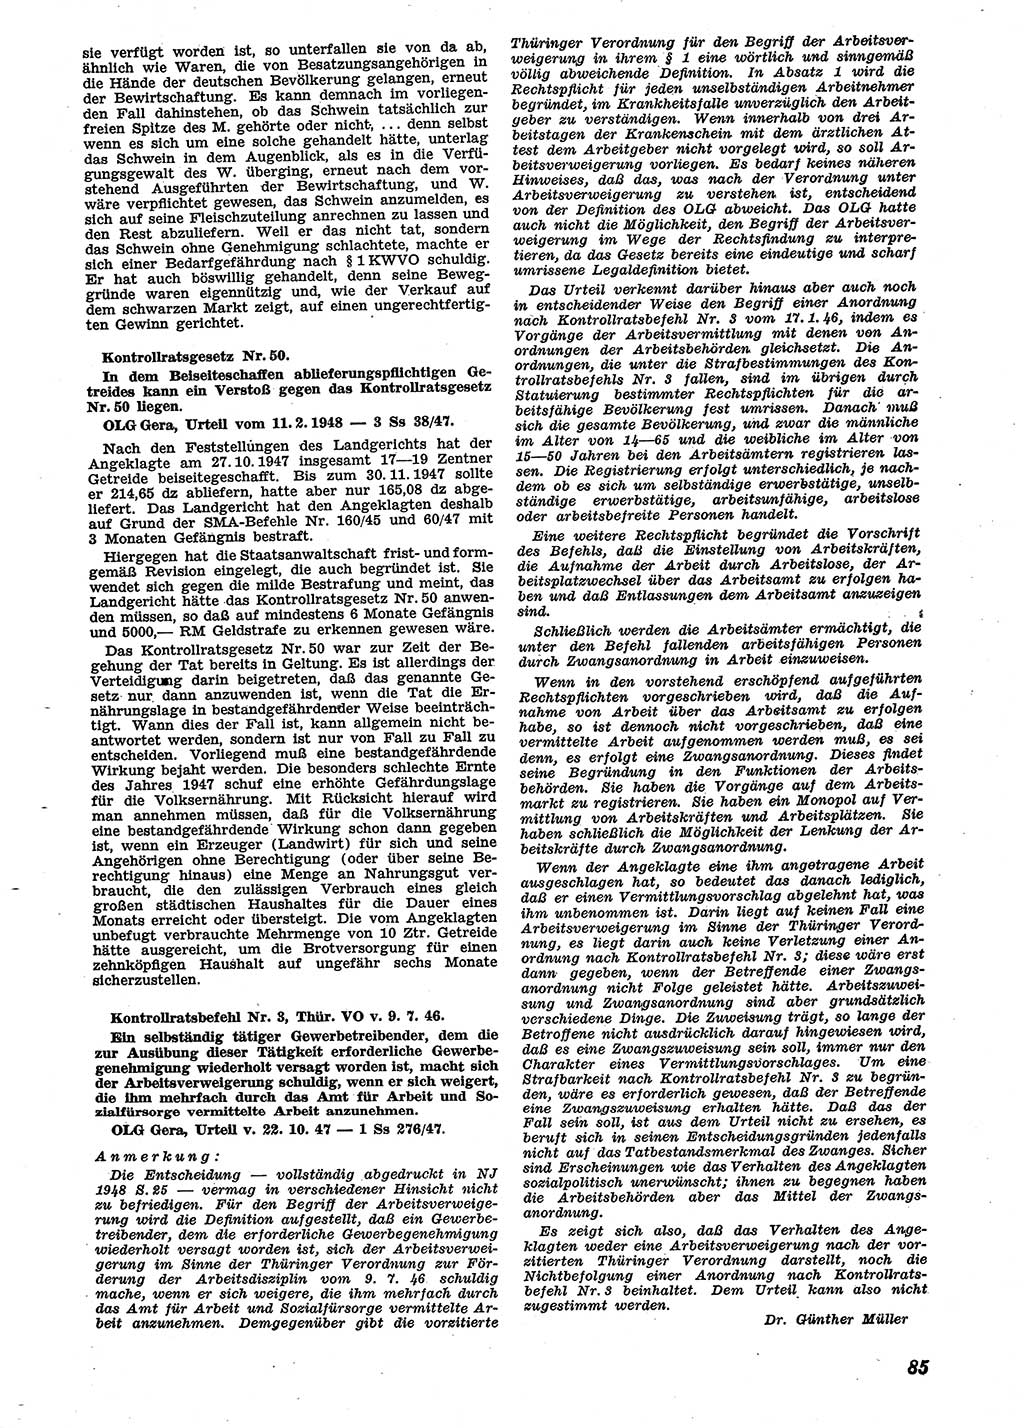 Neue Justiz (NJ), Zeitschrift für Recht und Rechtswissenschaft [Sowjetische Besatzungszone (SBZ) Deutschland], 2. Jahrgang 1948, Seite 85 (NJ SBZ Dtl. 1948, S. 85)